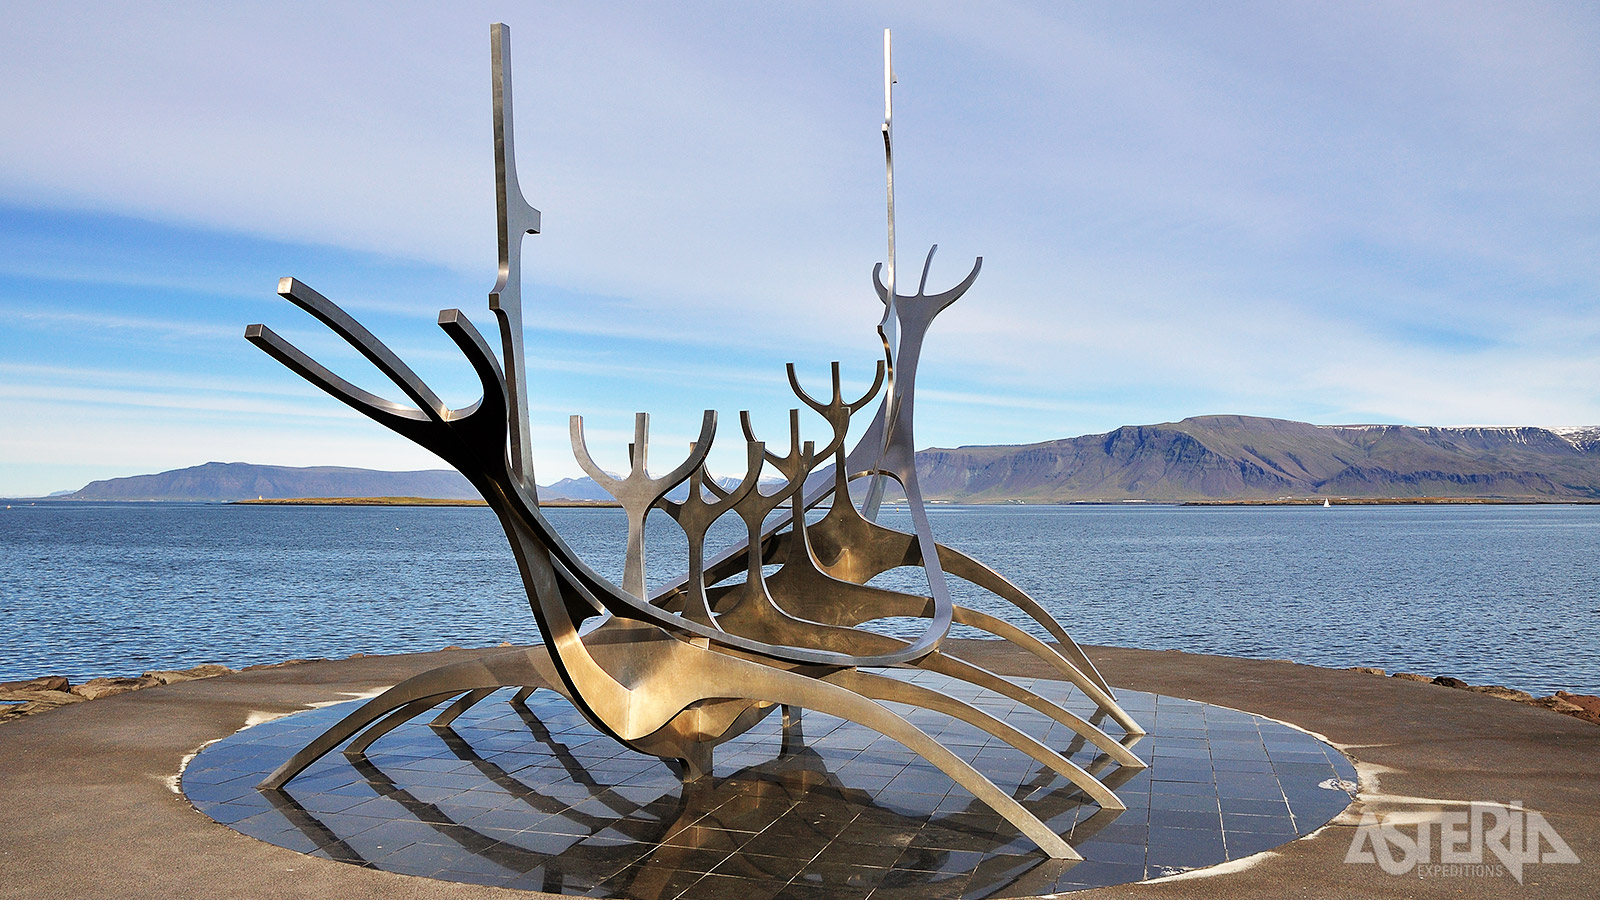 De Sun Voyager is een iconisch beeld uit 1990 werd ontworpen om de 200ste verjaardag van de IJslandse hoofdstad te vieren